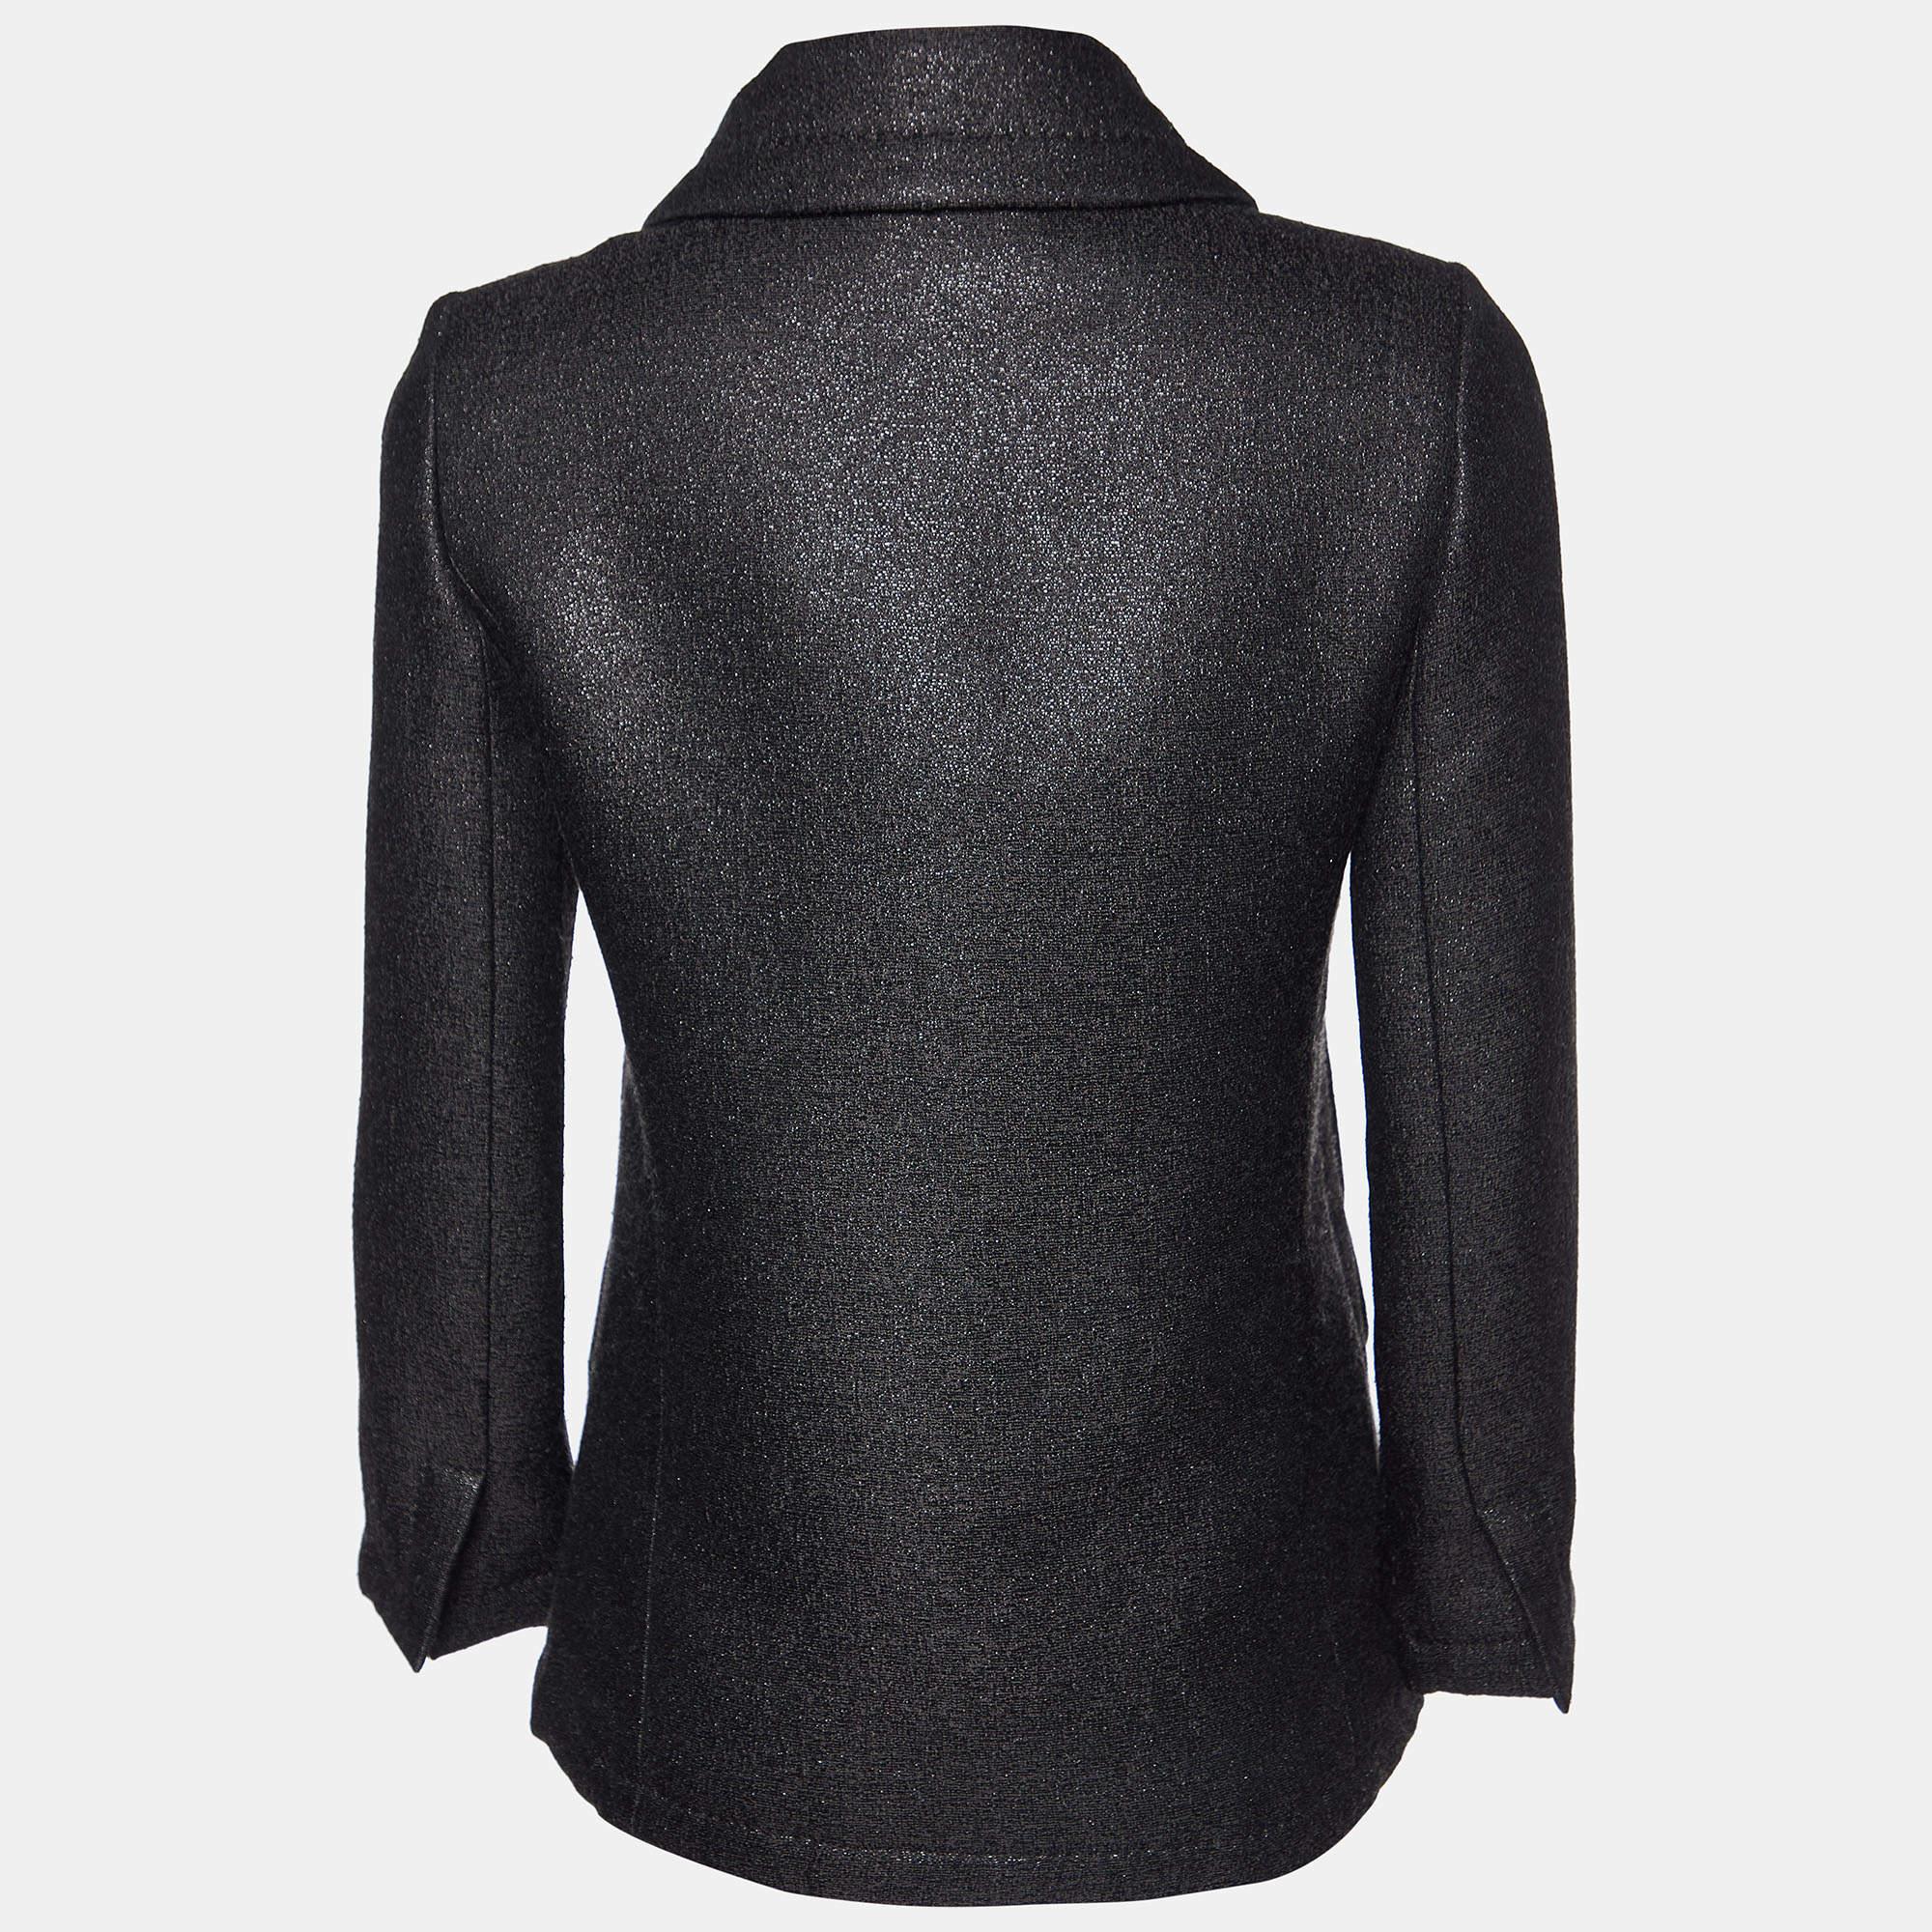 Enveloppez-vous d'une élégance intemporelle avec le caban Louis Vuitton. Réalisé avec une attention méticuleuse aux détails, ce vêtement d'extérieur luxueux exsude la sophistication et le raffinement. Son tissu en laine lurex noire lustrée offre à